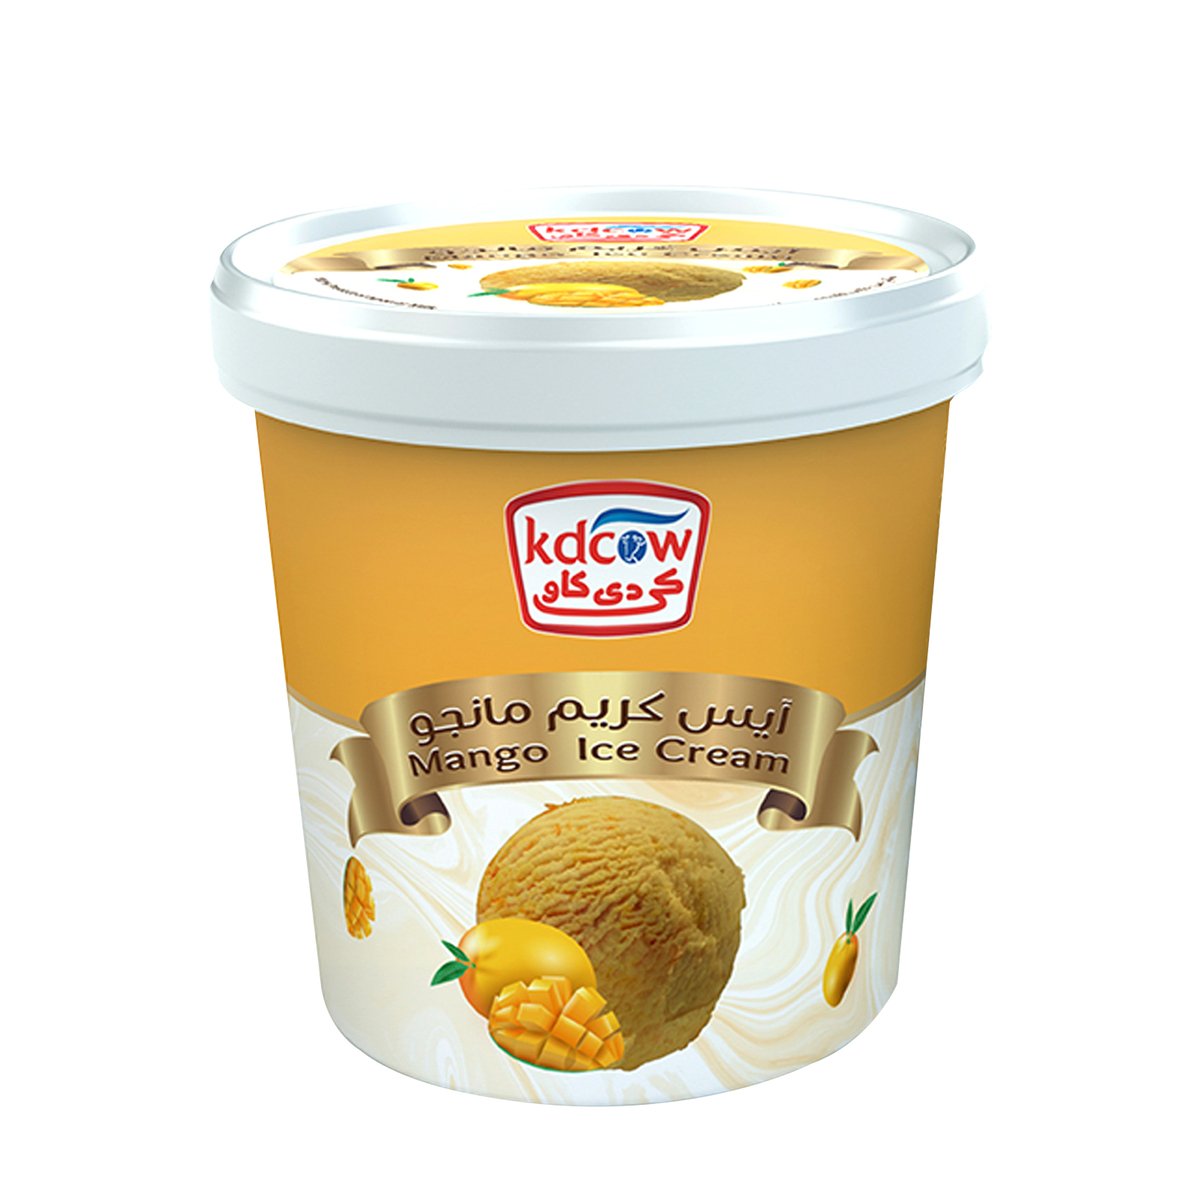 Kdcow Mango Ice Cream 1Litre